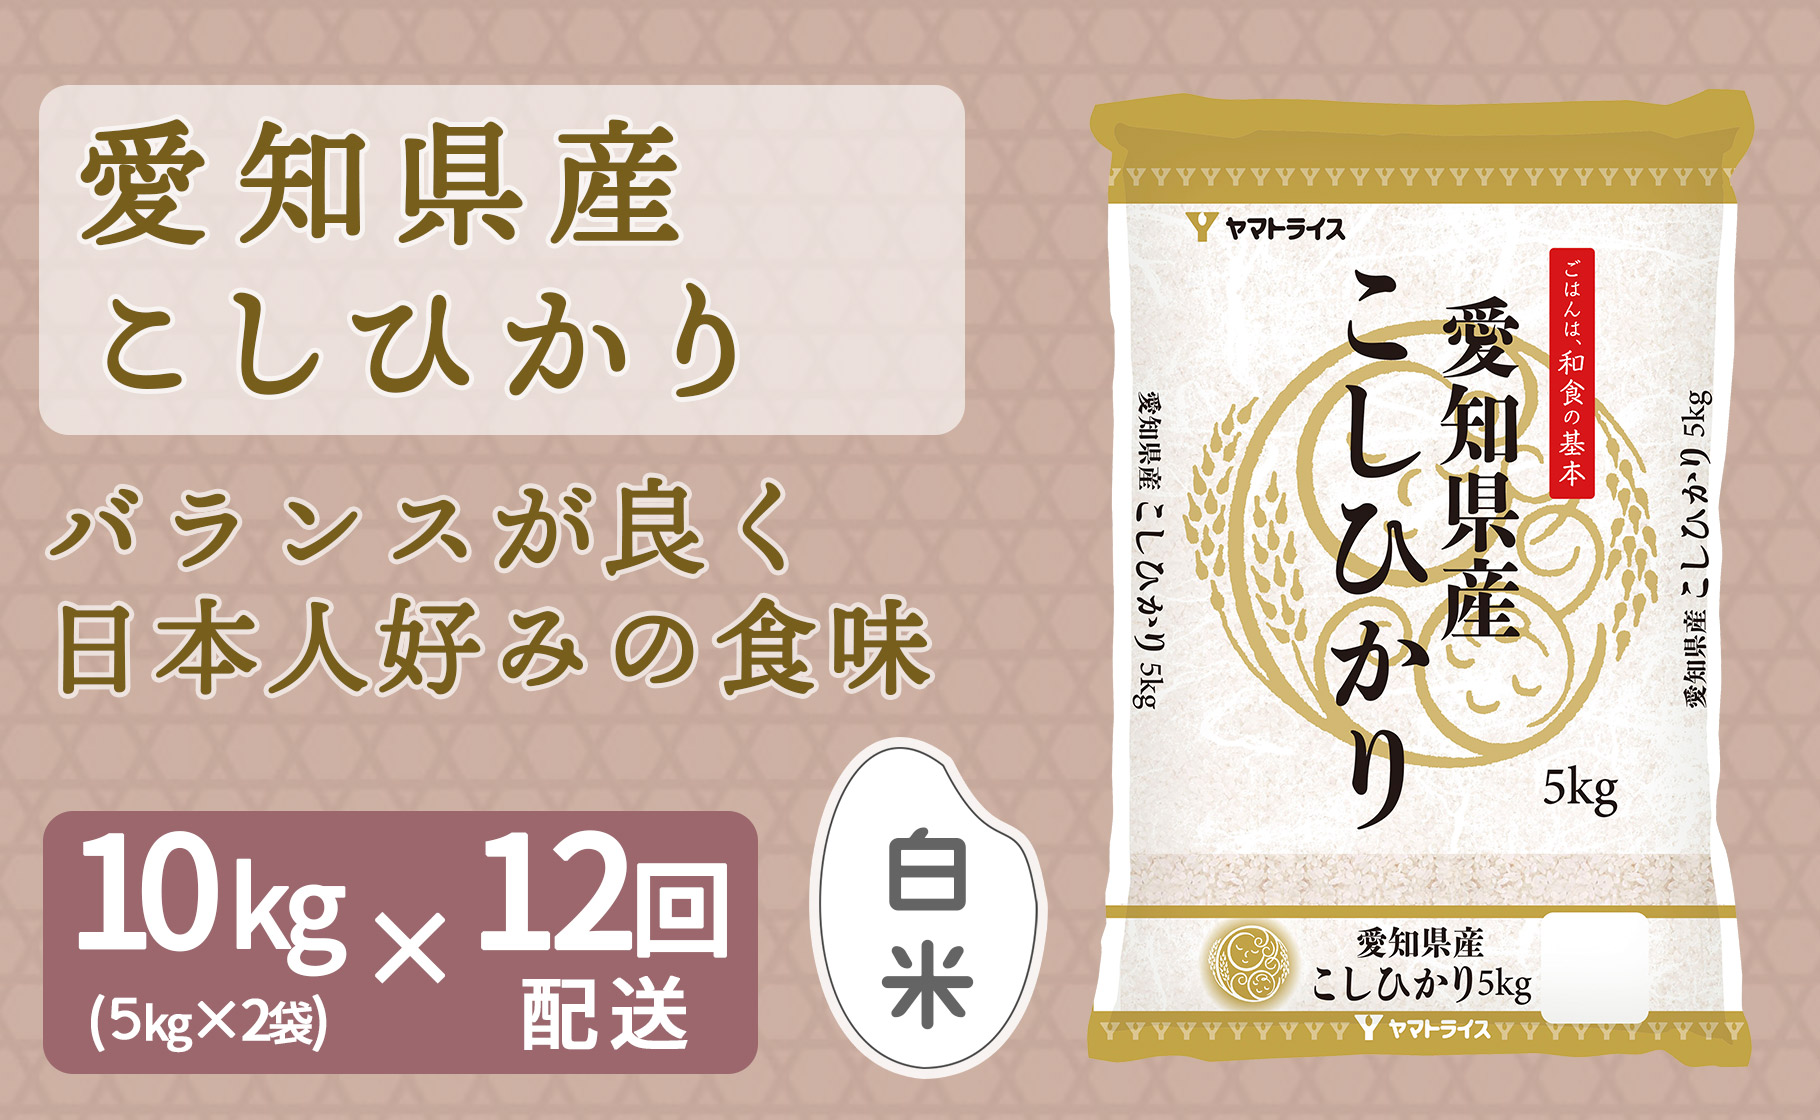 愛知県産コシヒカリ 10kg(5kg×2袋) ※定期便12回 安心安全なヤマト